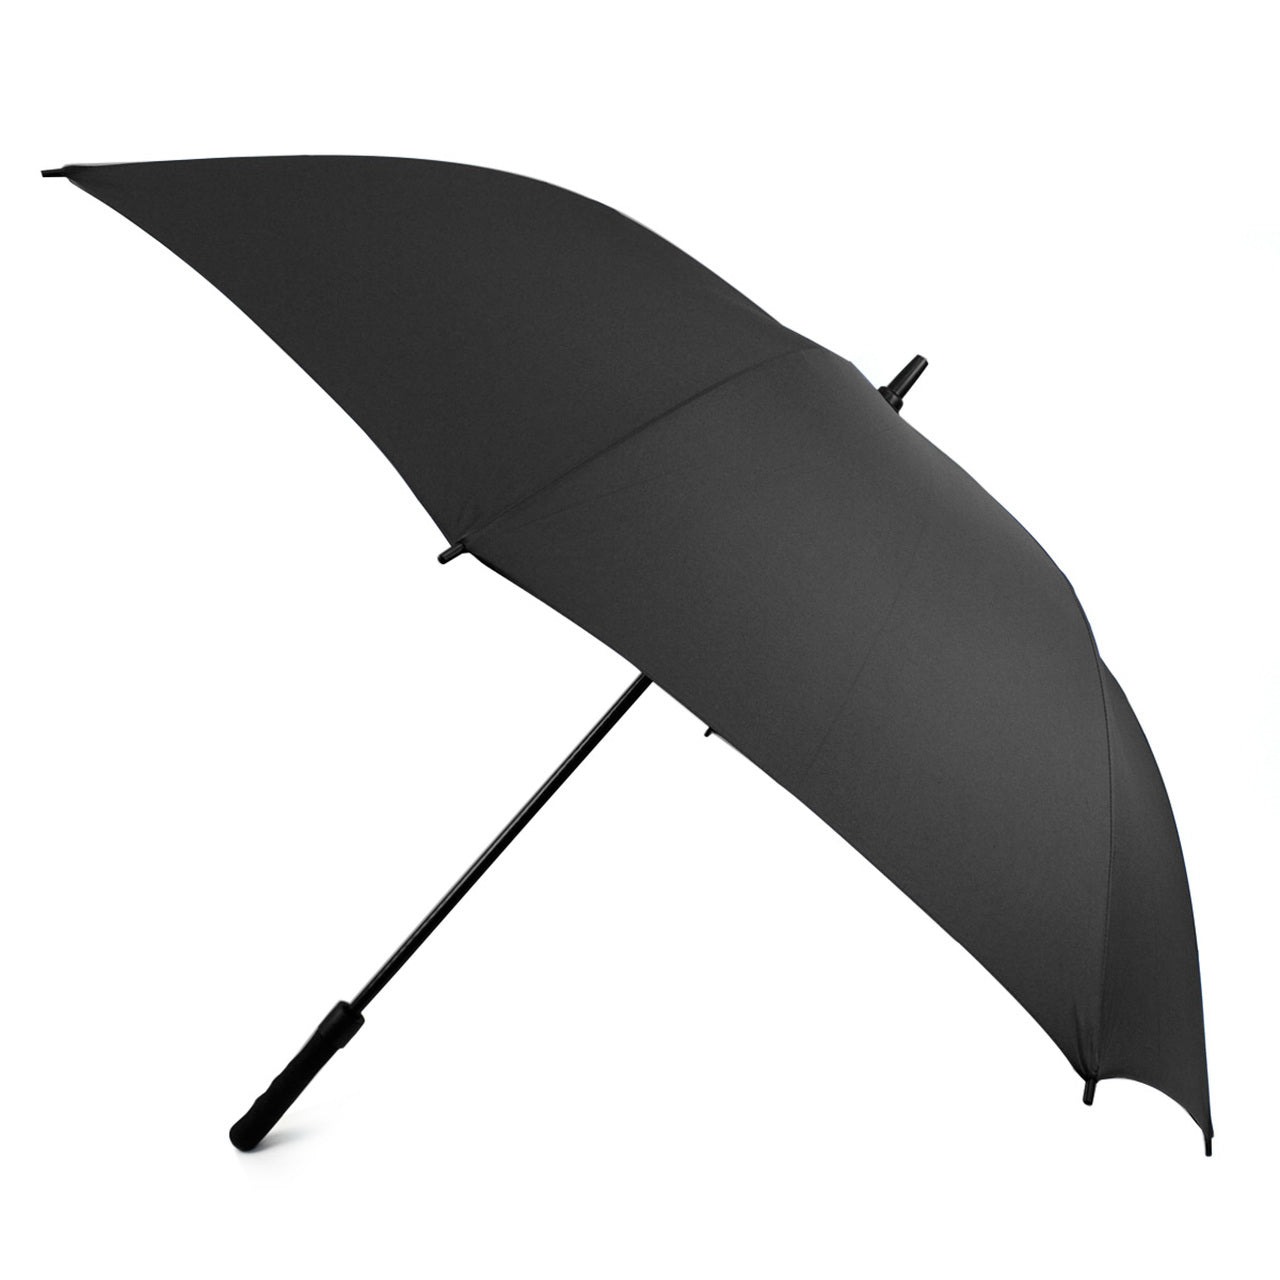 Selini Auto Open Golf Canopy Umbrella, Black